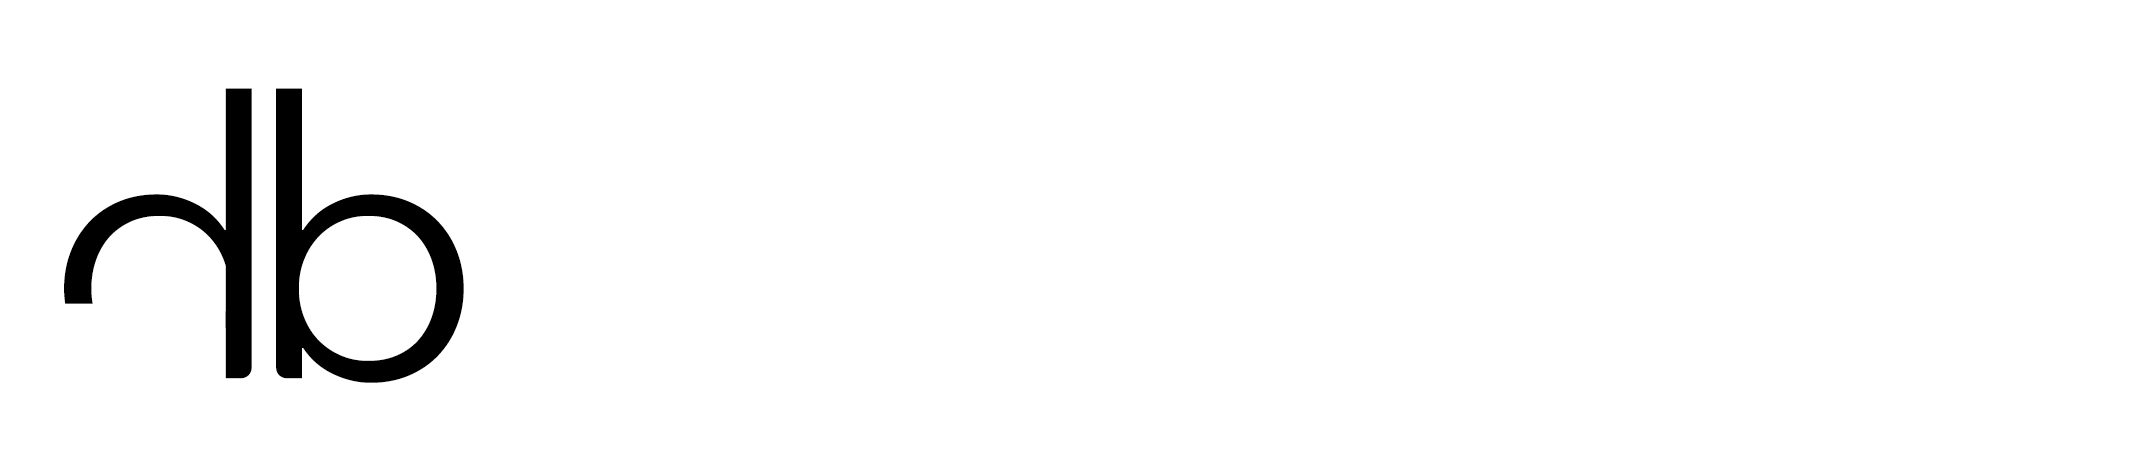 Henrik Bosse - Ausseneinrichtung - Logo